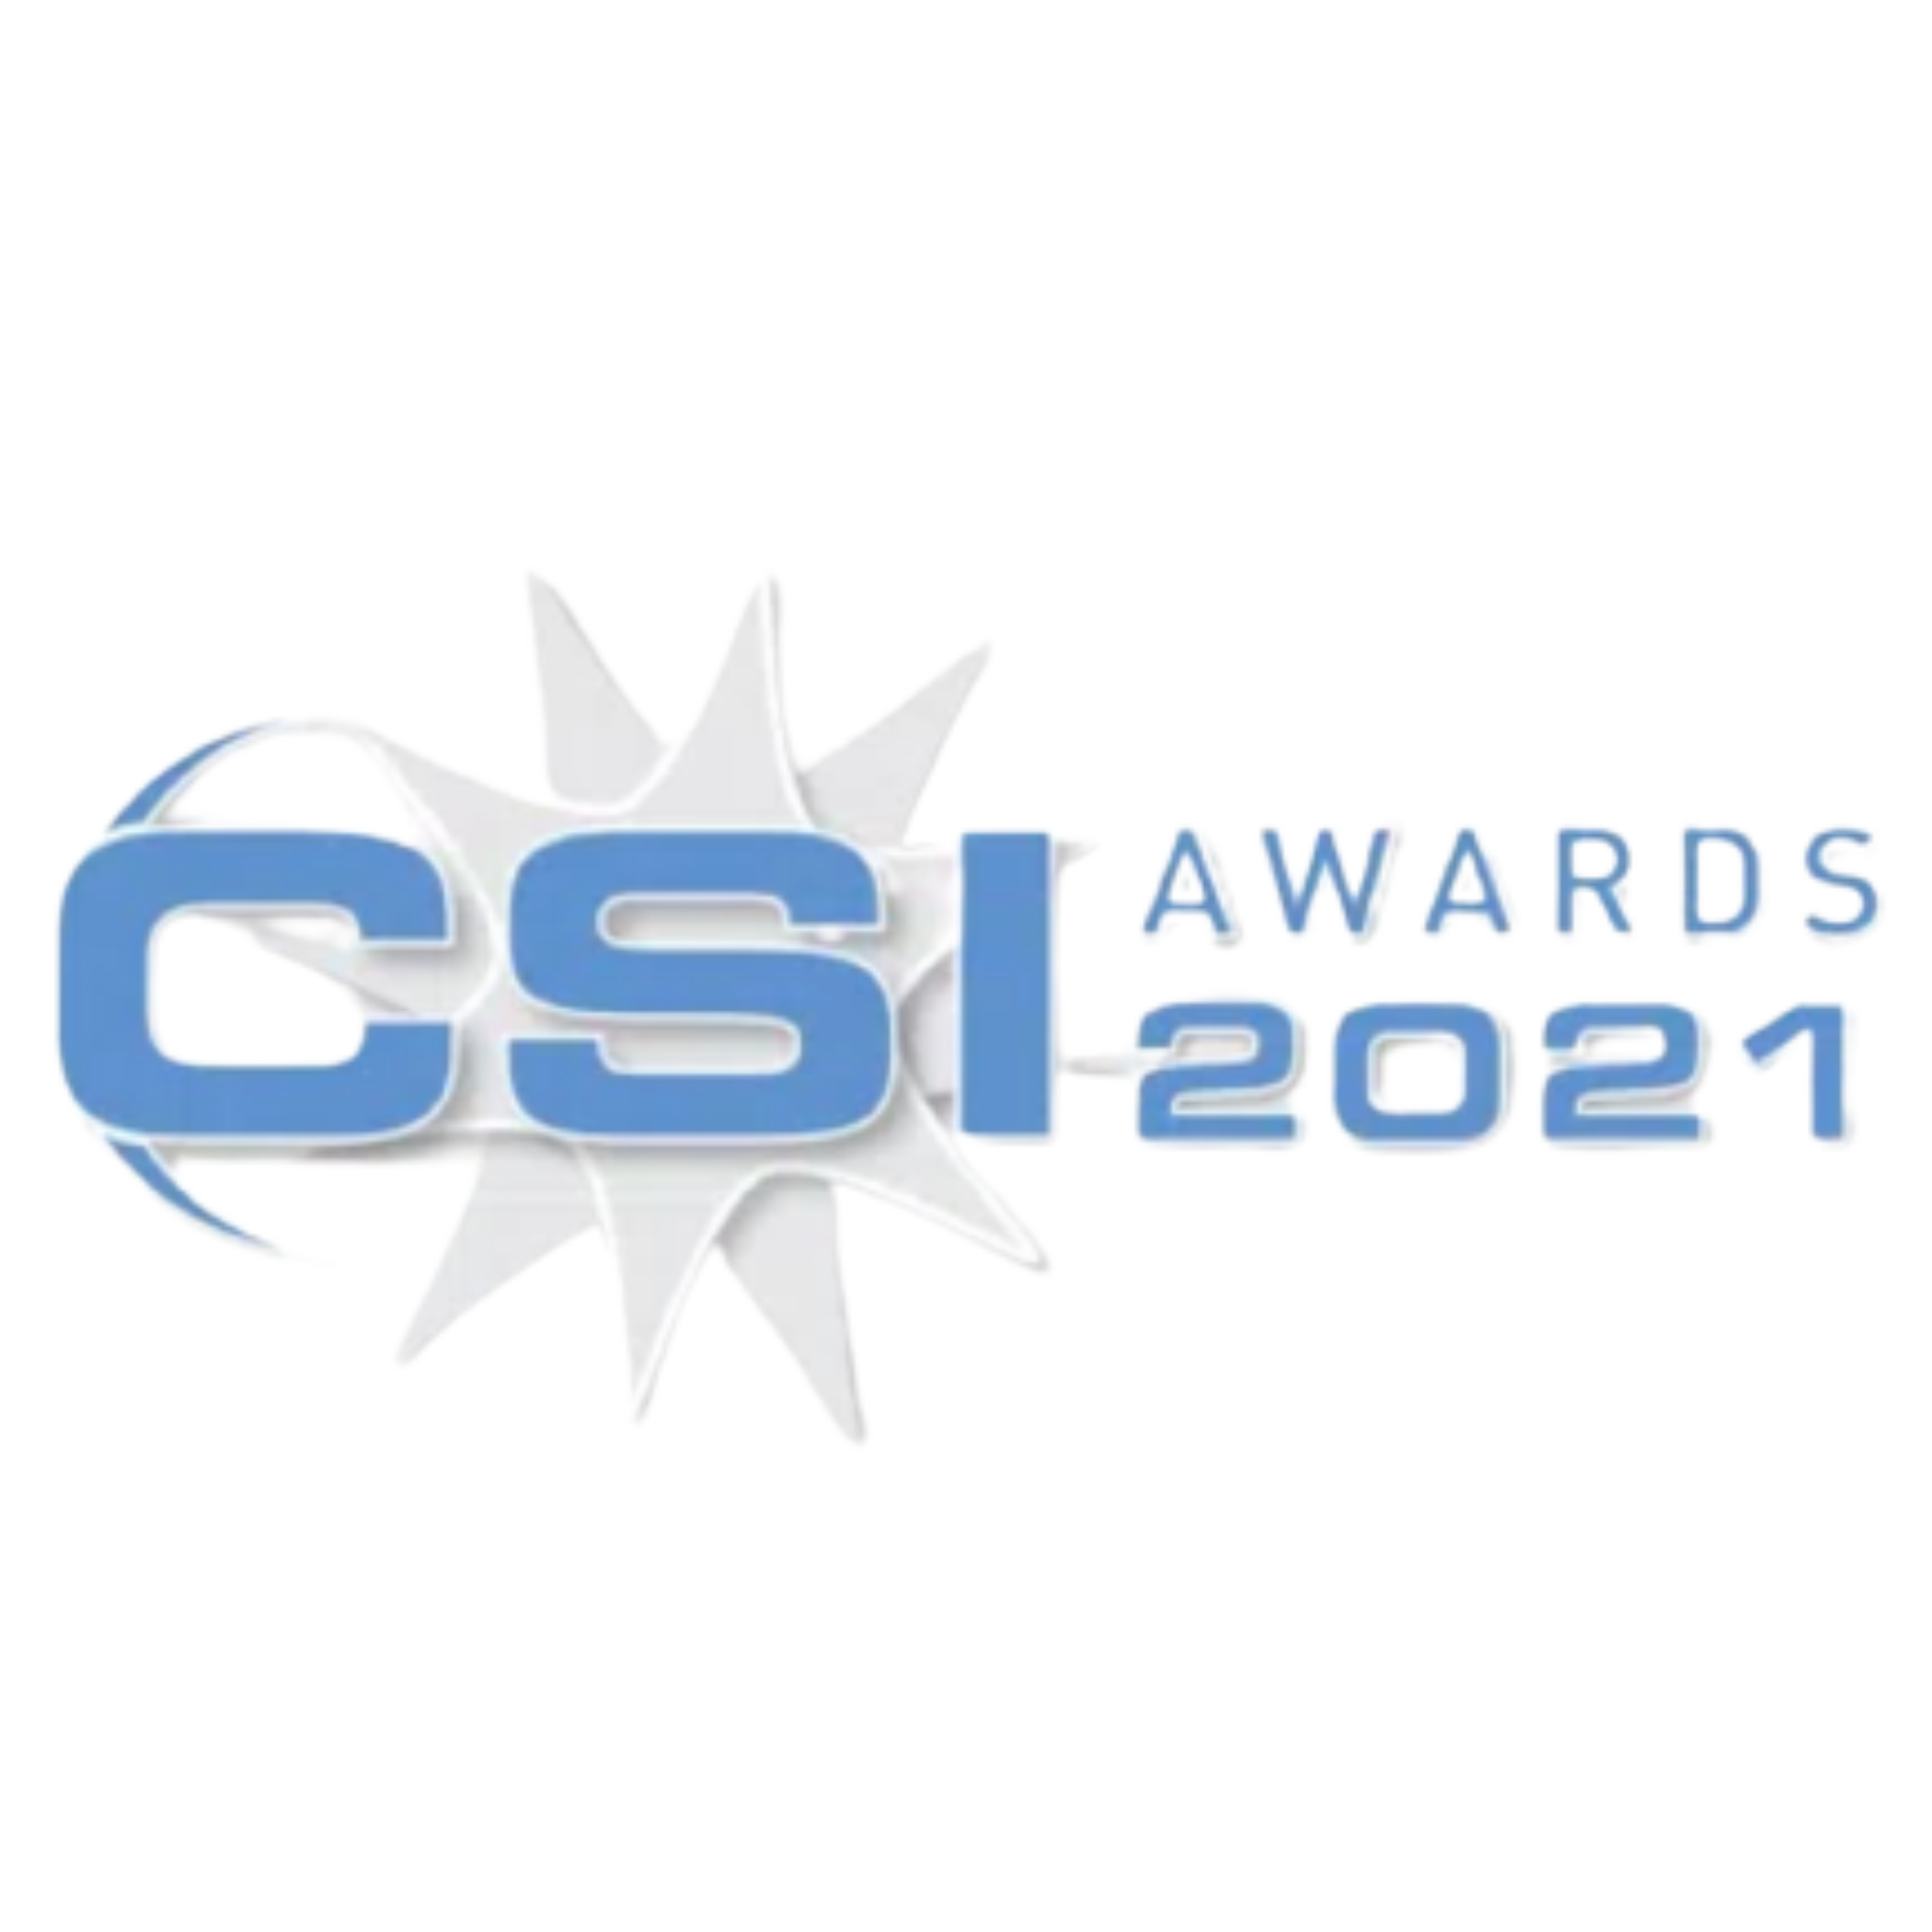 CSI Awards 2021